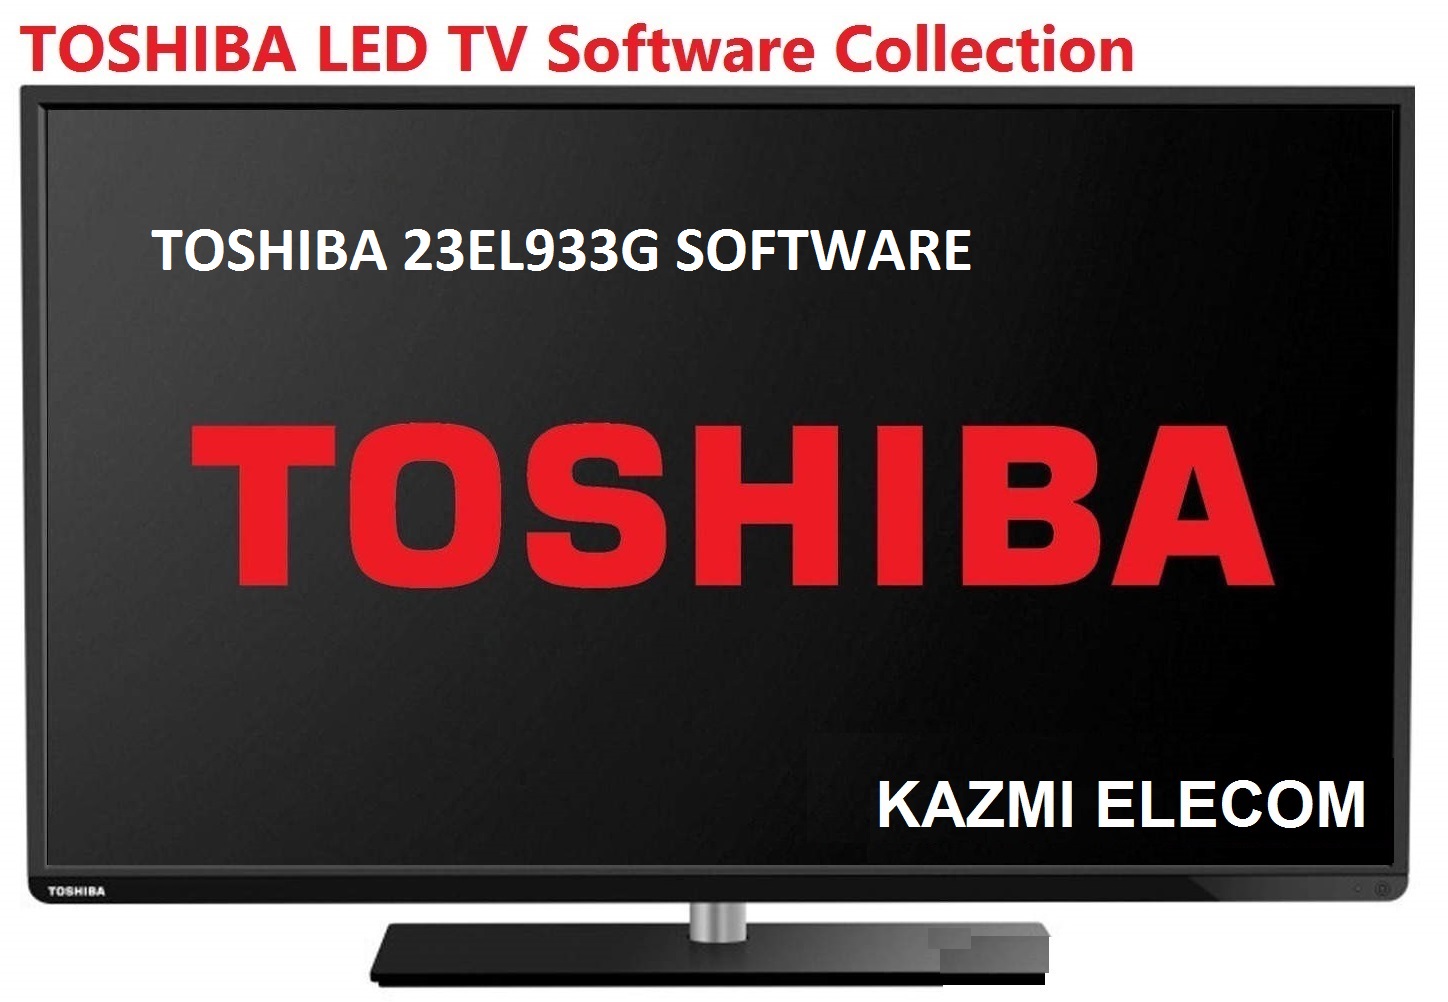 Toshiba 23El933G